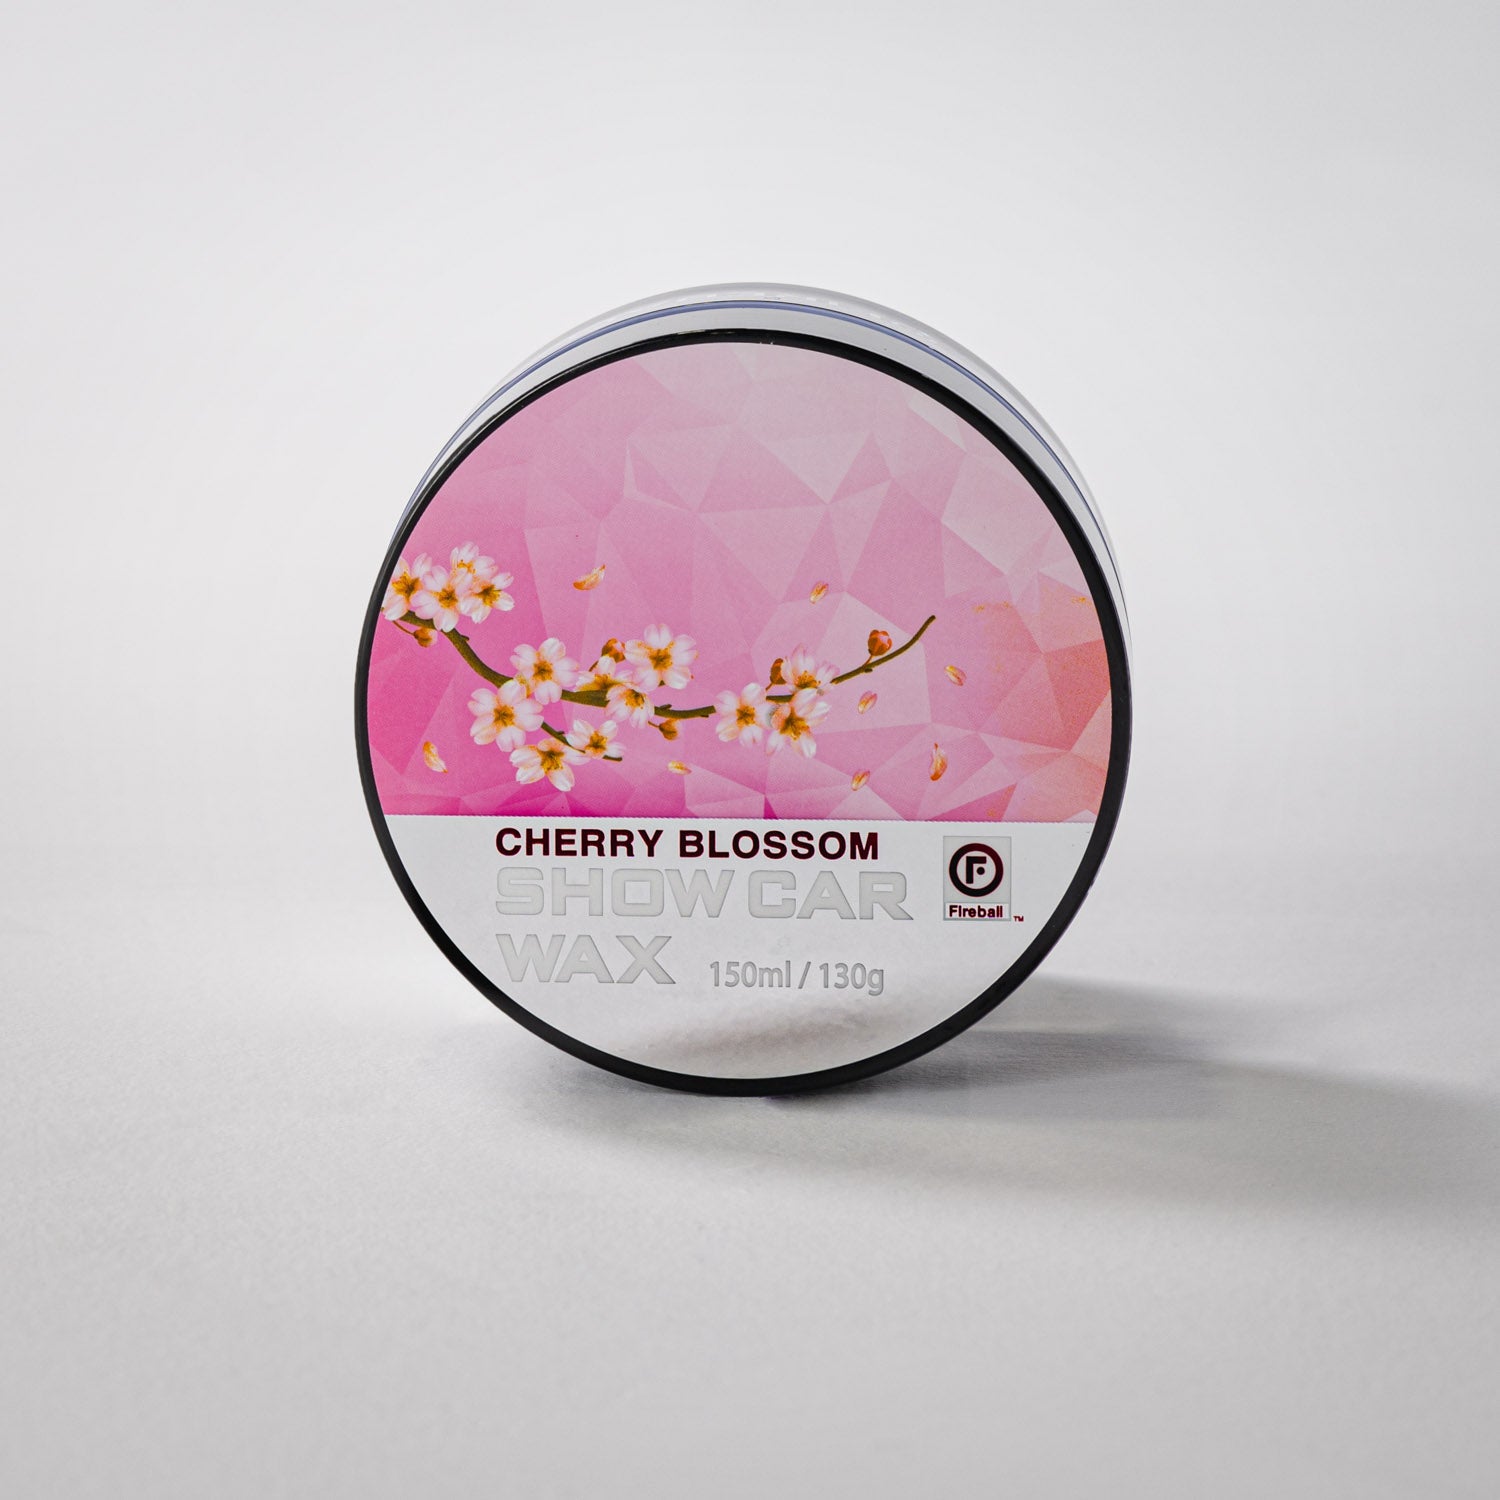 Fireball Cherry Blossom Wax 130g